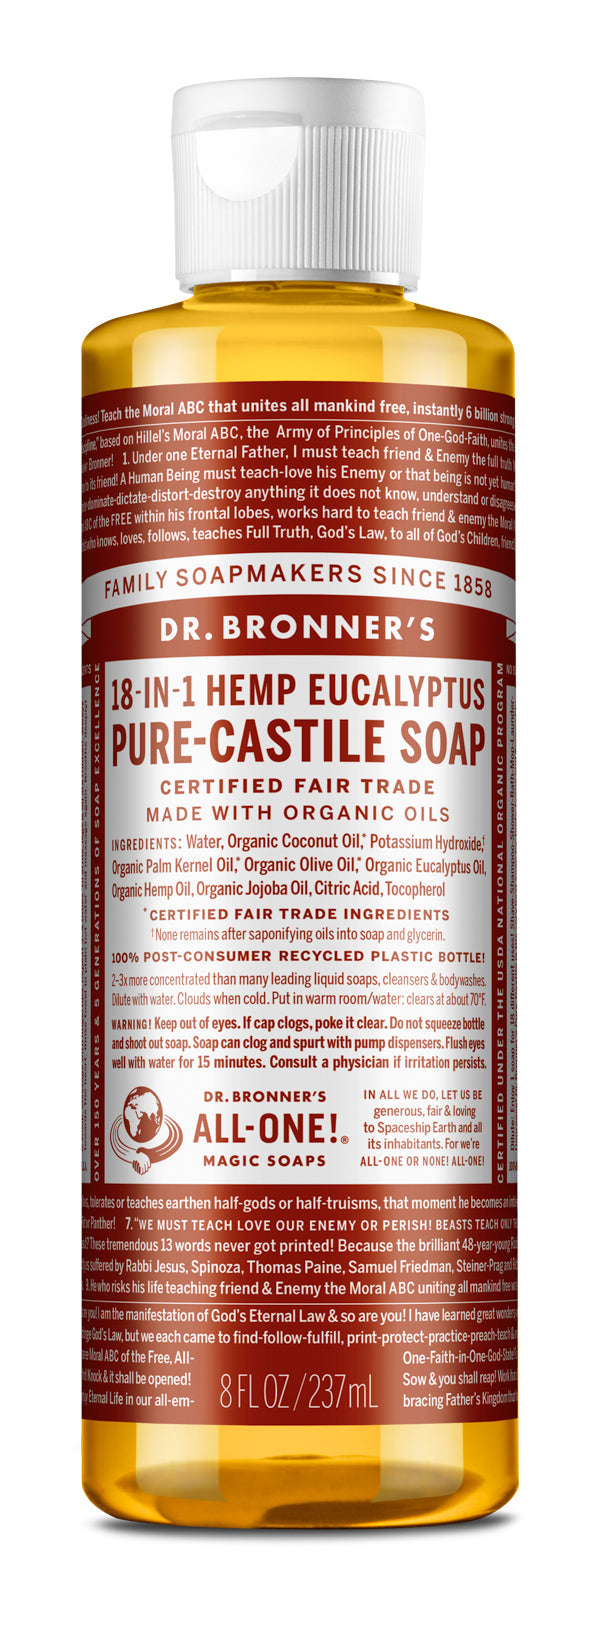 Eucalyptus - Pure-Castile Liquid Soap - 8 oz - ProCare Outlet by Dr Bronner's